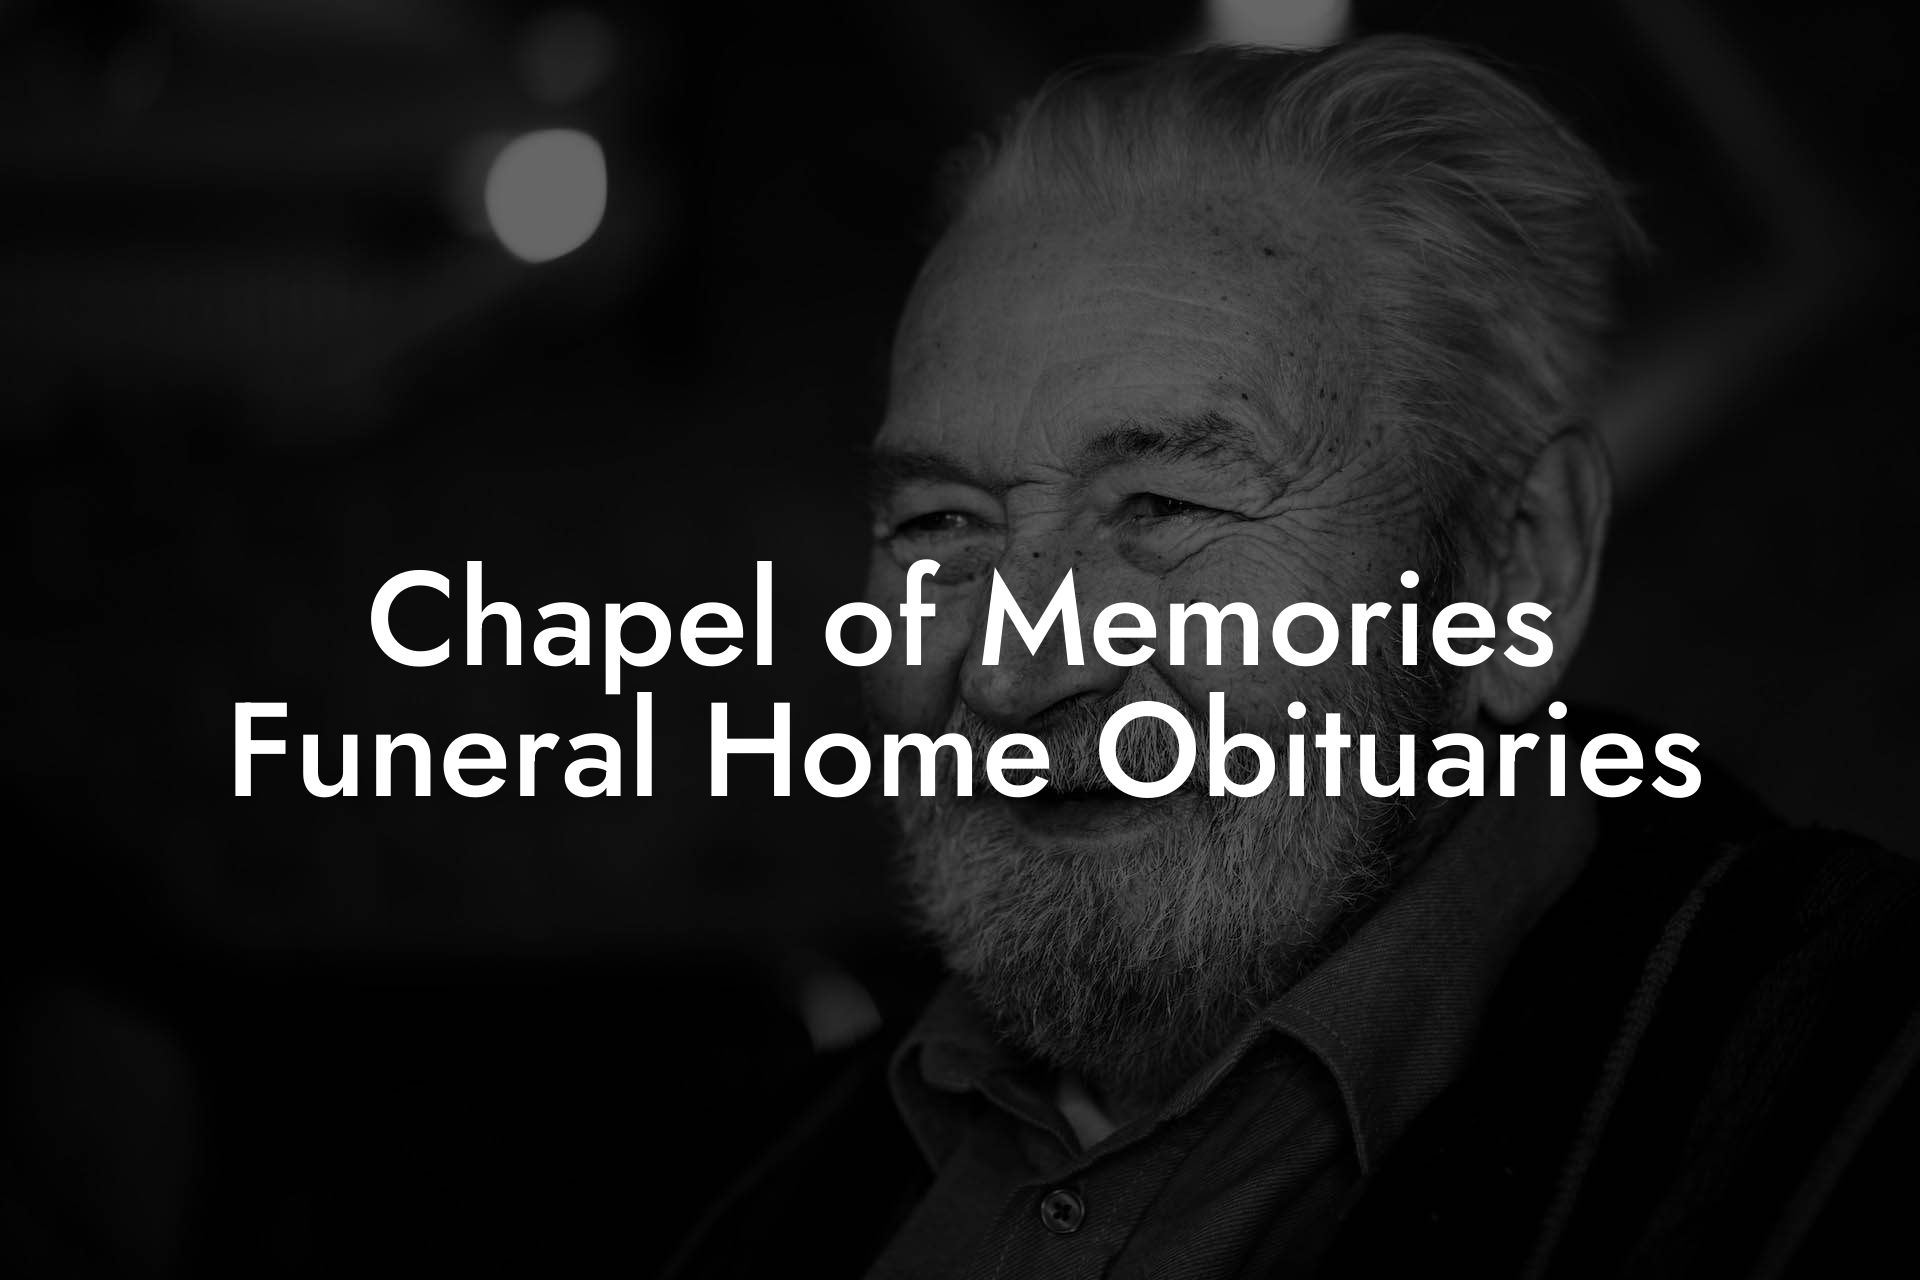 Chapel of Memories Funeral Home Obituaries